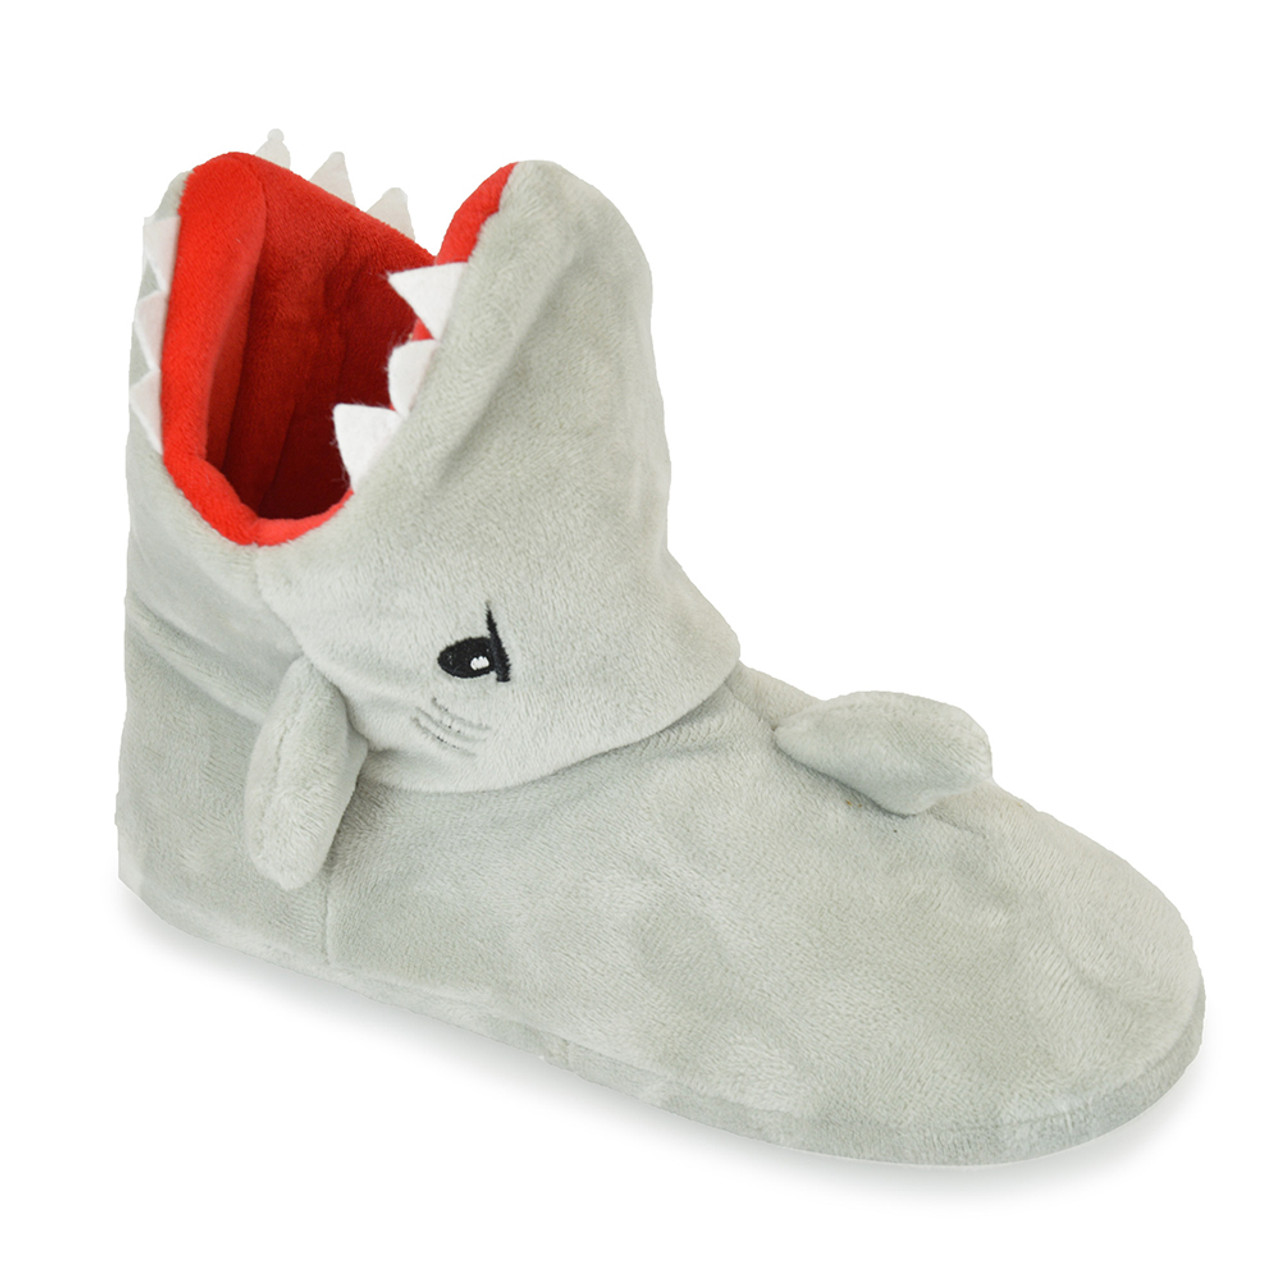 Kids' Slipper Boots (4-7 Yrs) | M&S US